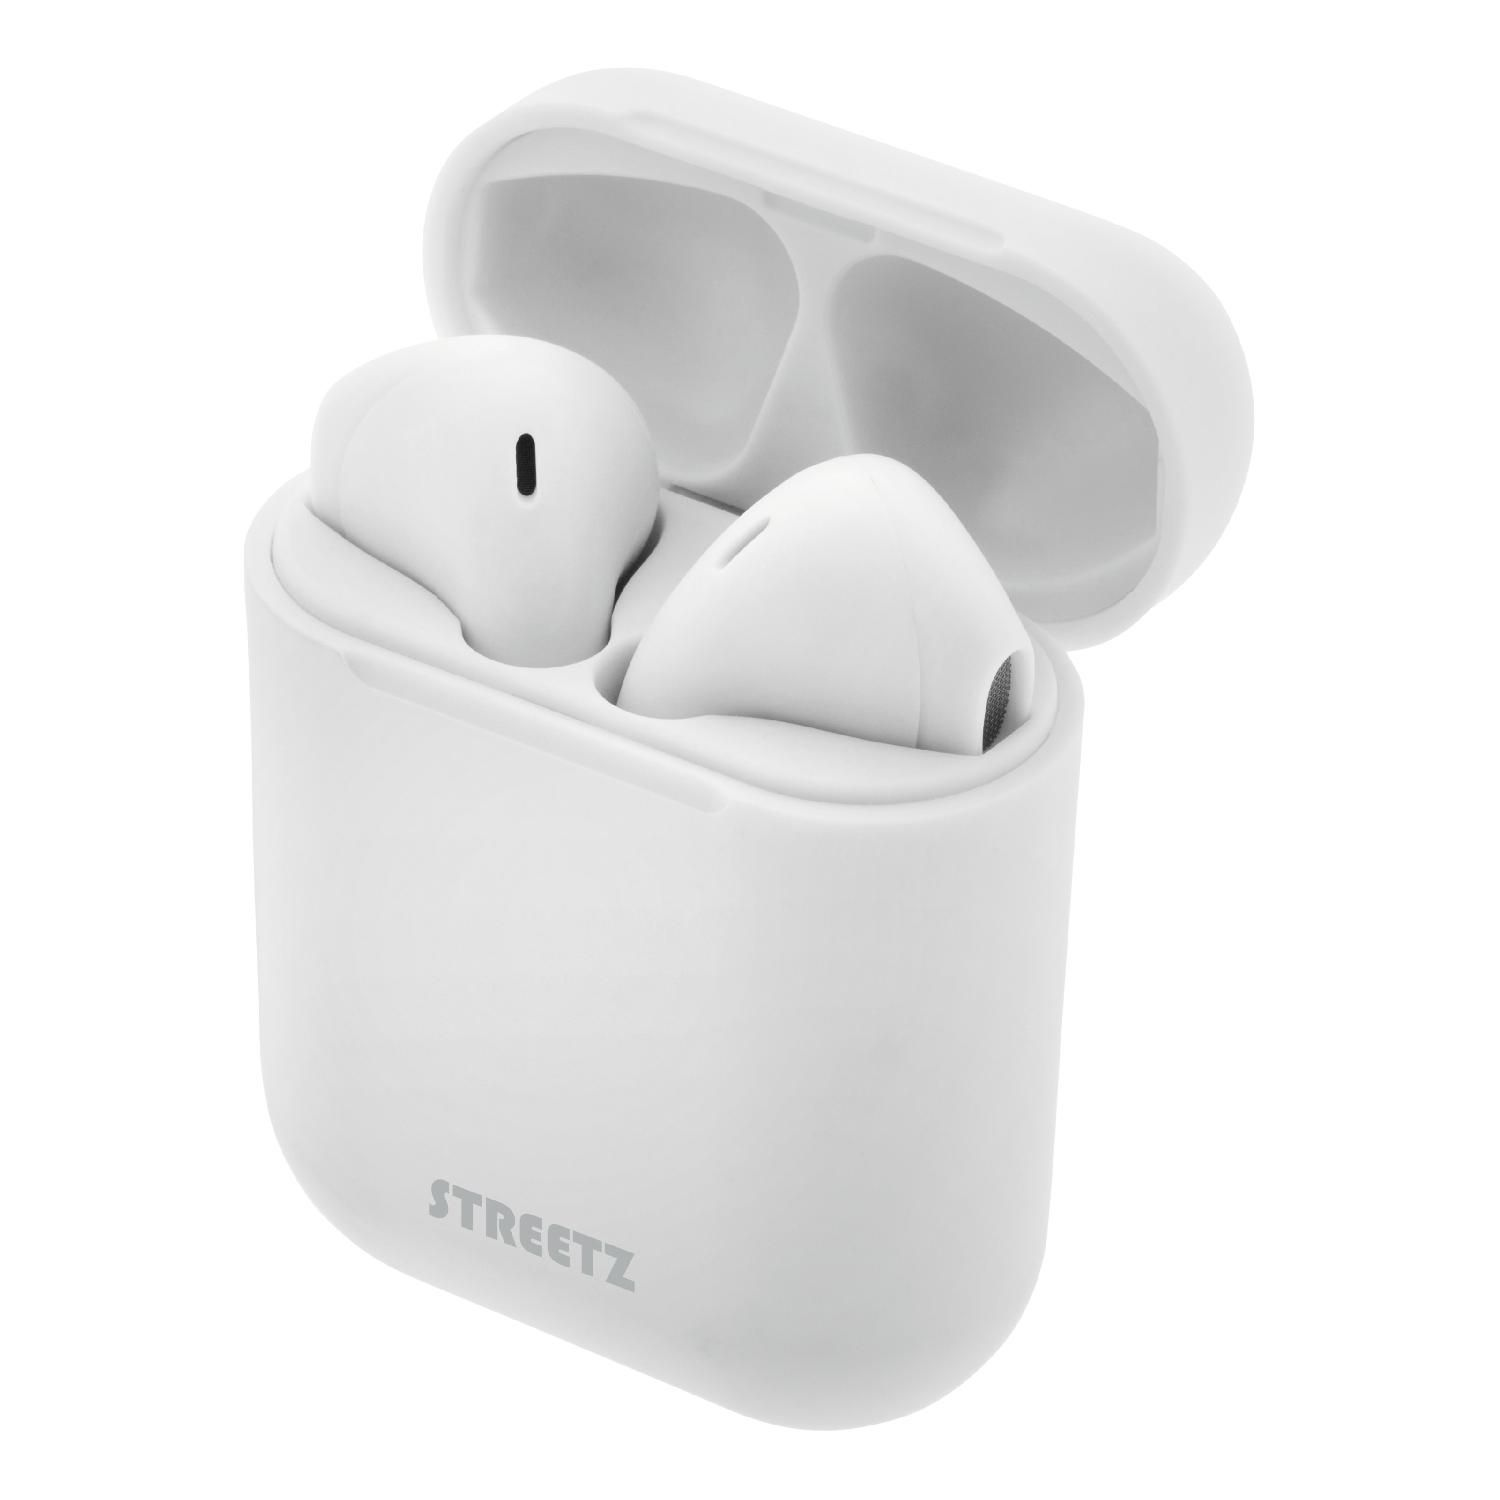 TWS Kopfhörer, STREETZ In-ear Kopfhörer Bluetooth In-Ear weiß